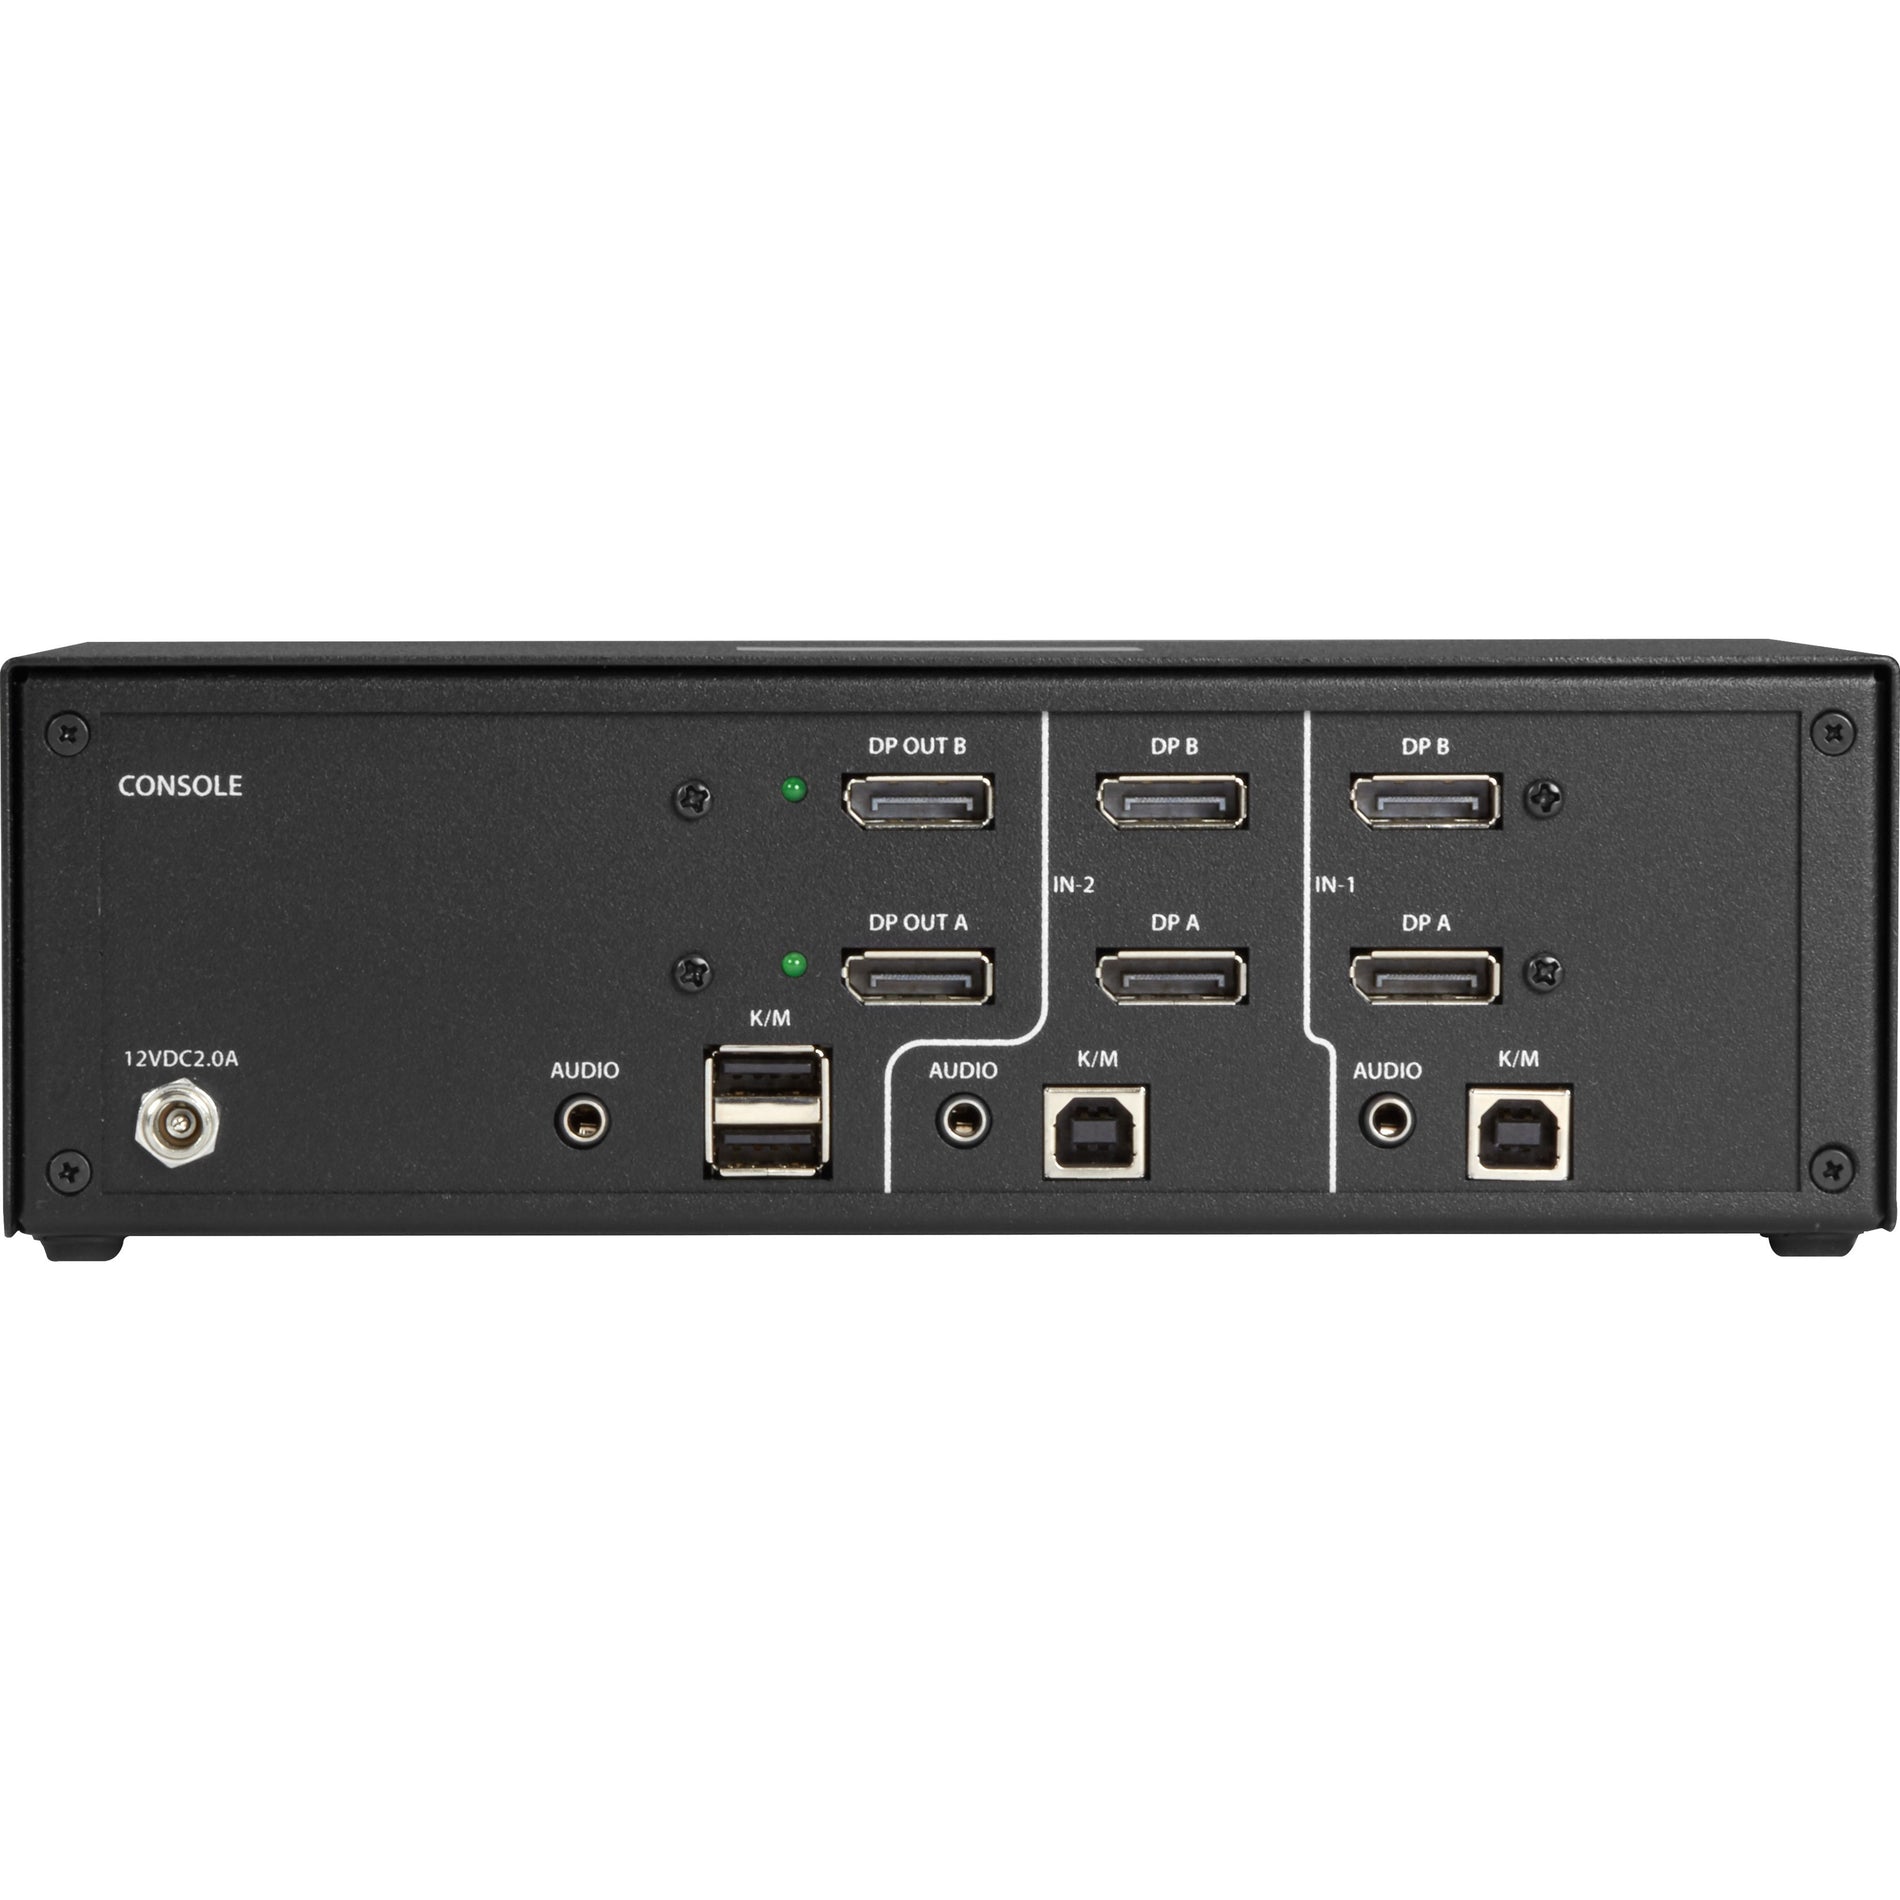 ブラックボックス SS2P-DH-DP-U NIAP 3.0 セキュアー 2 ポート デュアルヘッド ディスプレイポート KVM スイッチ、4k、TAA コンプライアント  ブランド名：ブラックボックス   ブランド名の翻訳：黒い箱